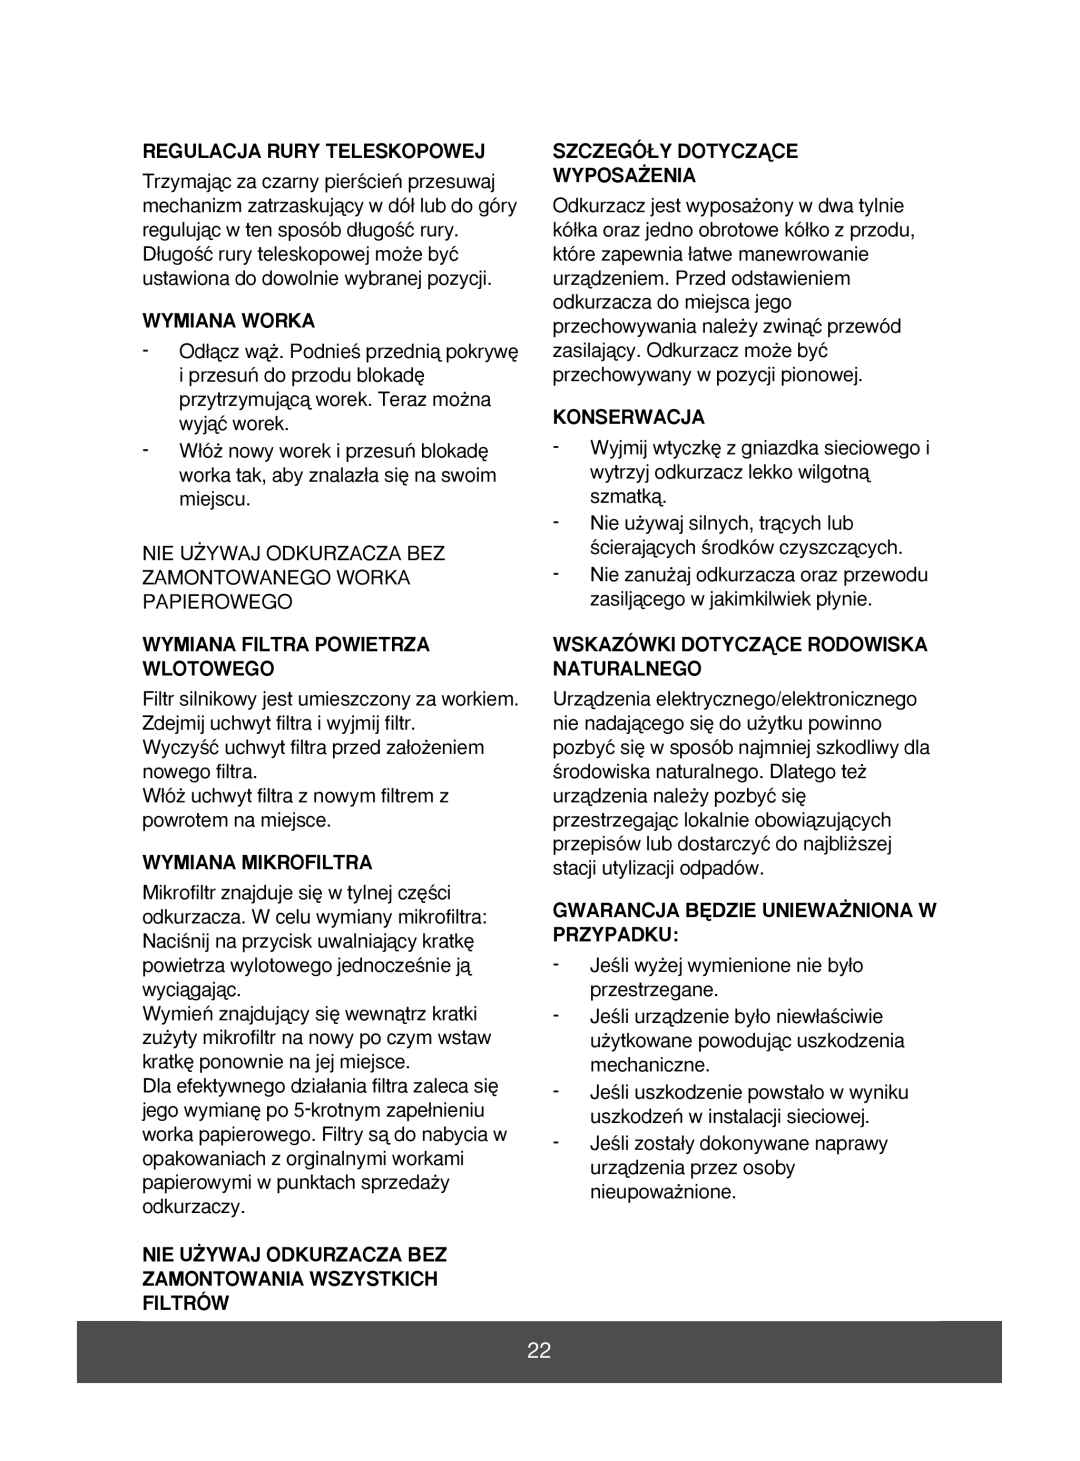 Melissa 640-043 manual Regulacja Rury Teleskopowej, Wymiana Worka, Wymiana Filtra Powietrza Wlotowego, Wymiana Mikrofiltra 